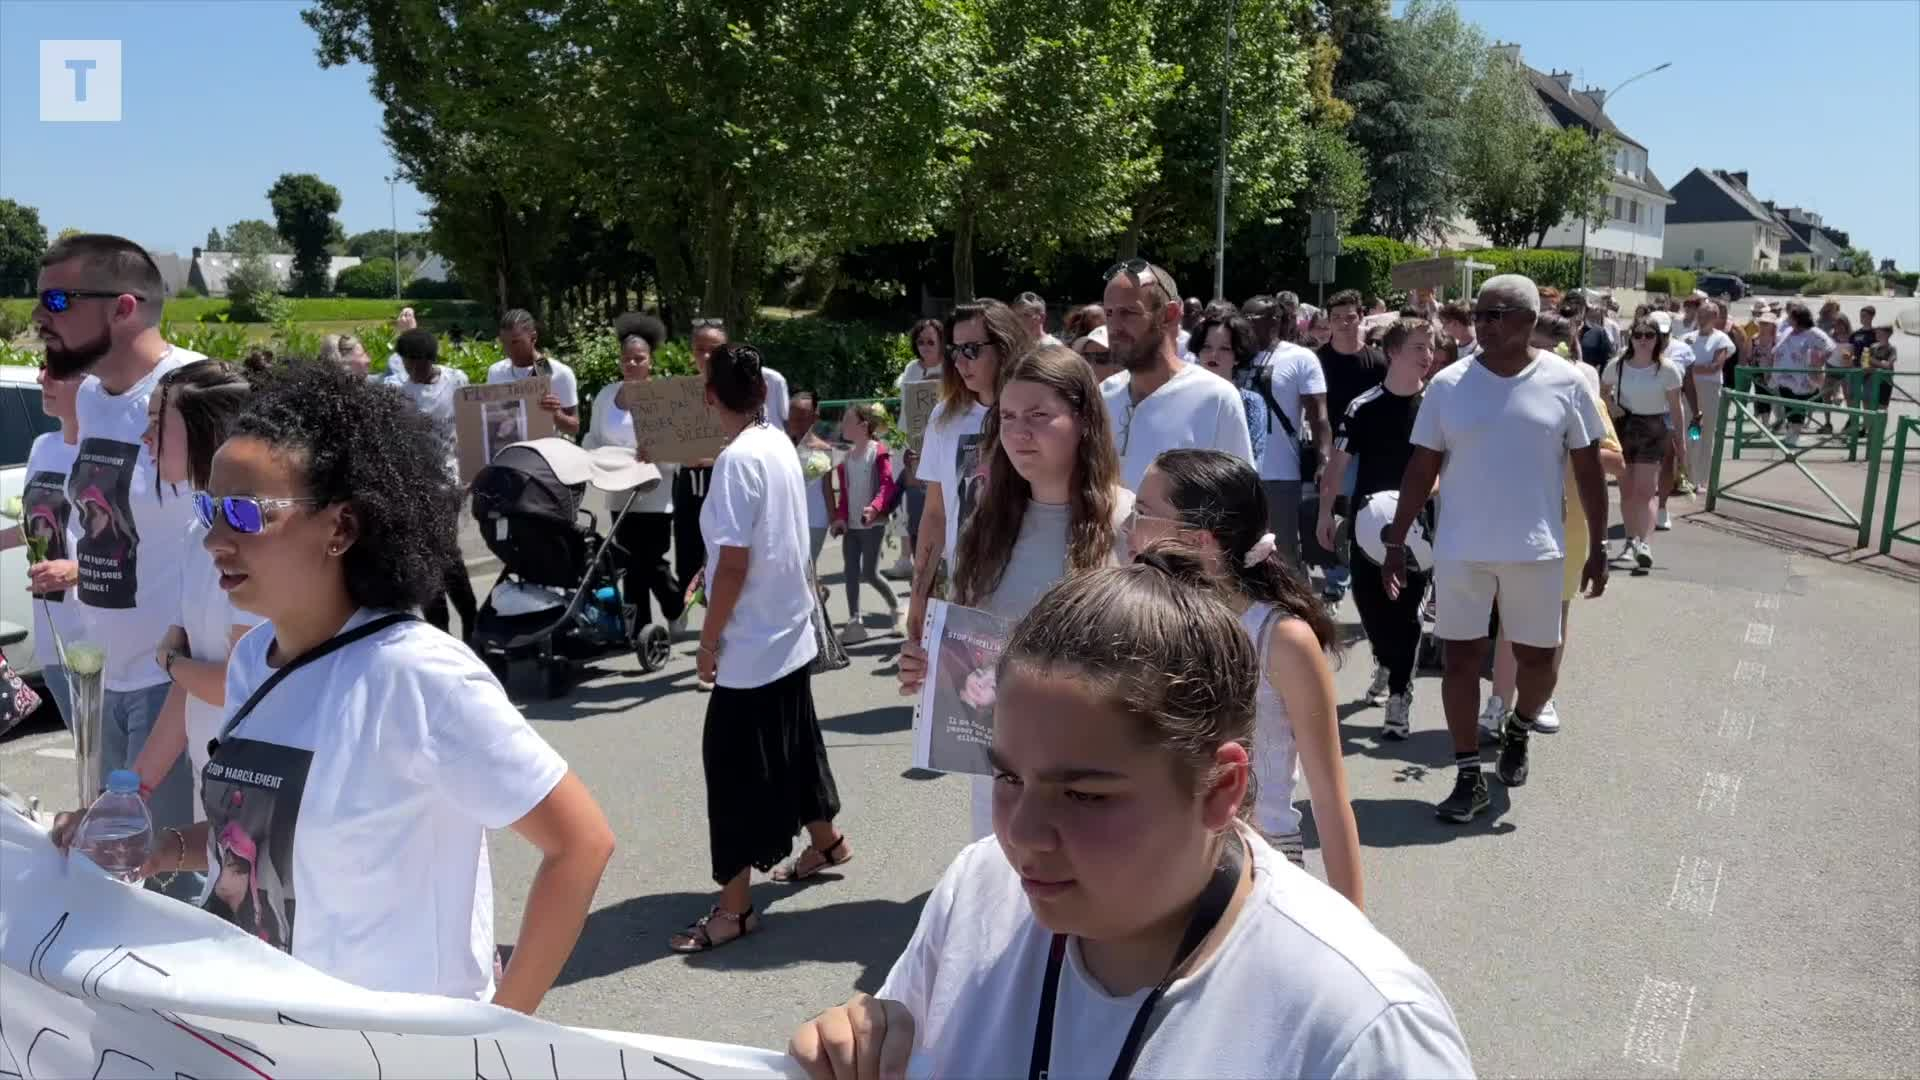 Suicide de Célia, 14 ans, à Hennebont : une marche blanche pour dire « plus jamais ça » [Vidéo]